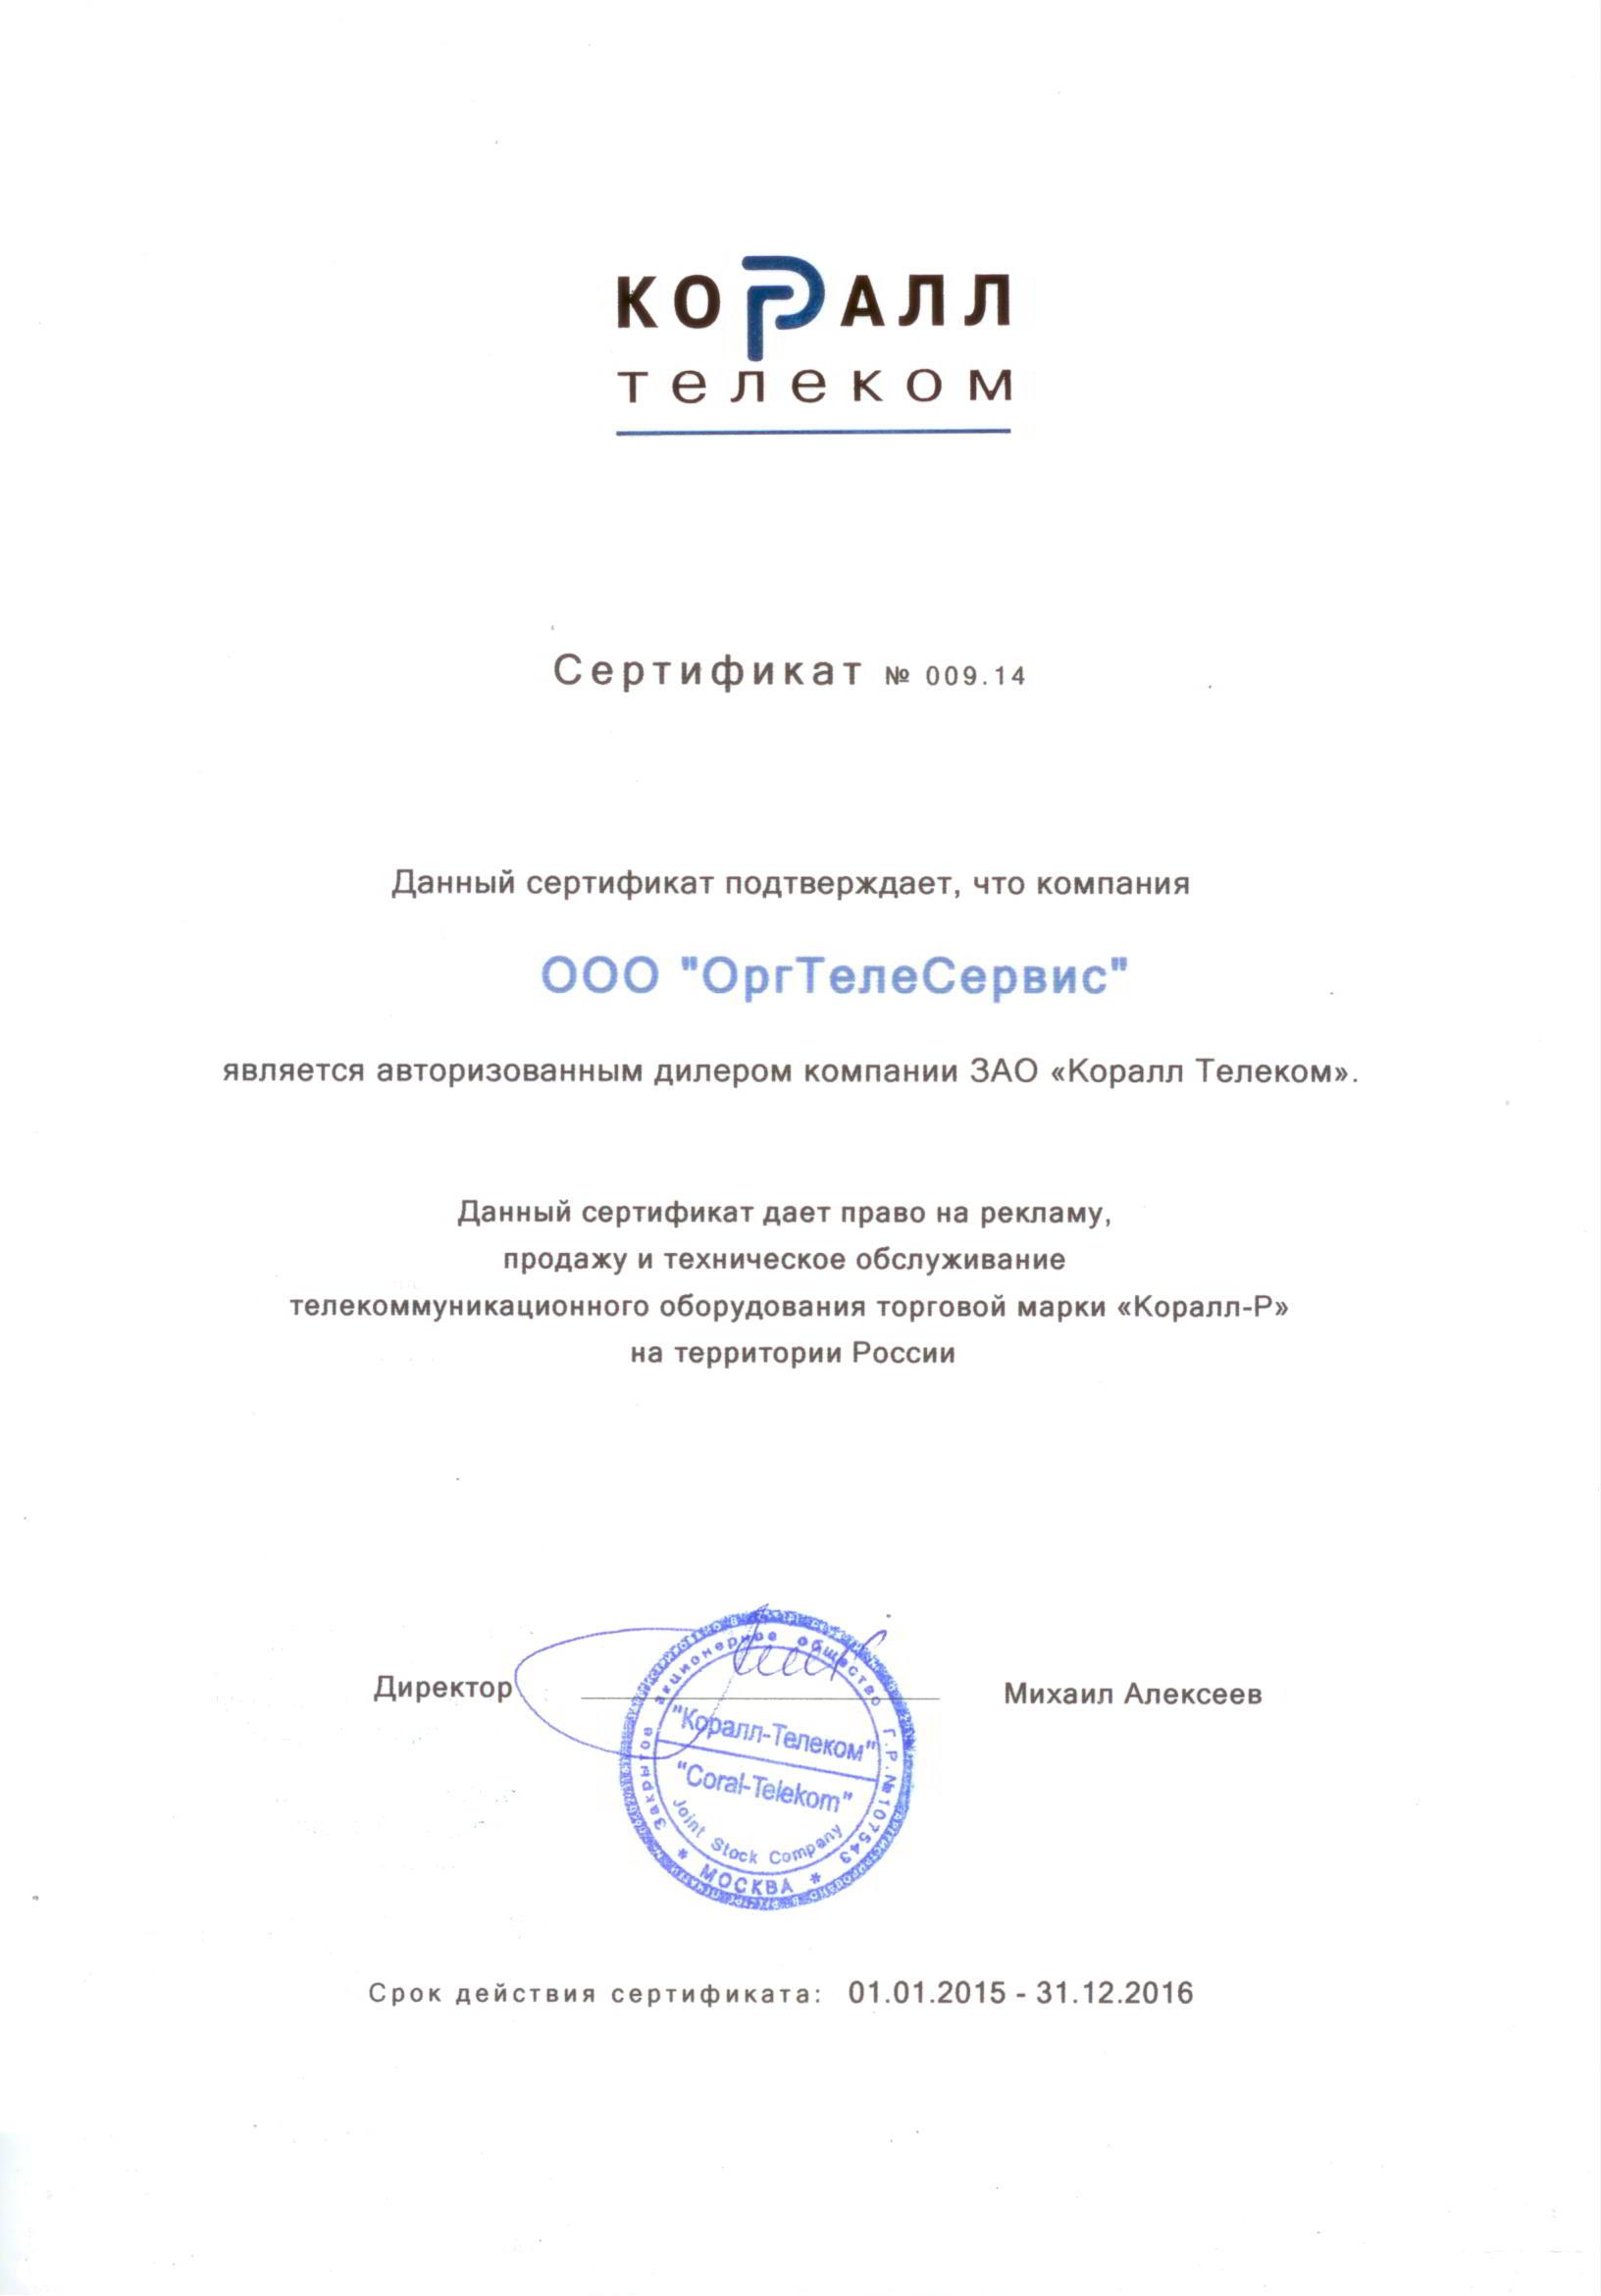 Сертификат КОРАЛЛ